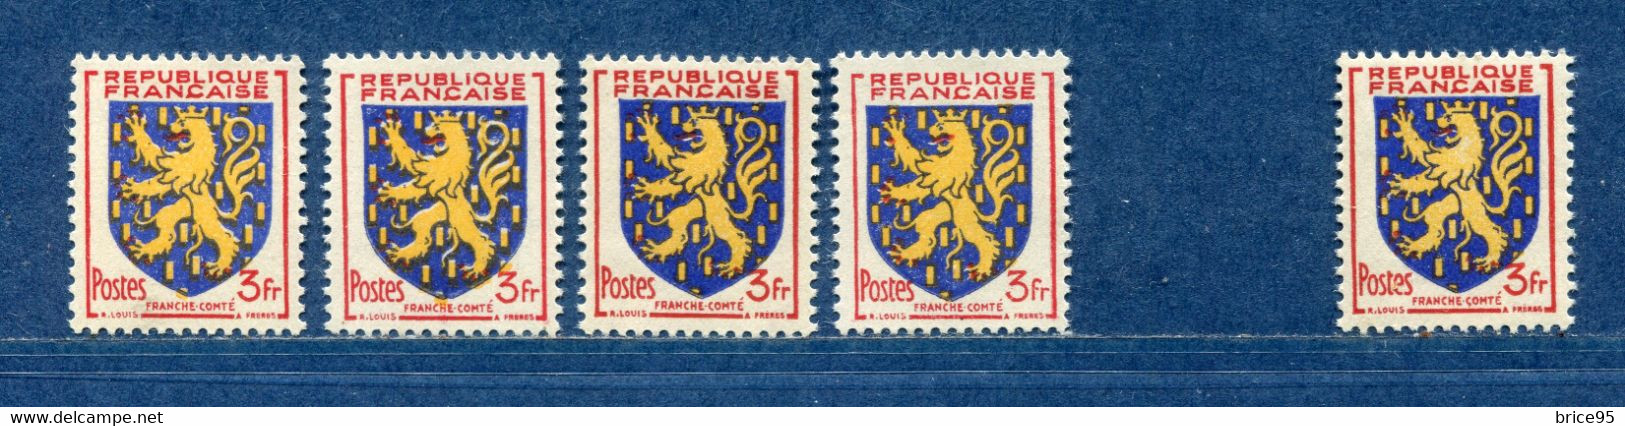 ⭐ France - Variété - YT N° 903 - Couleurs - Pétouilles - Neuf Sans Charnière - Droite Avec Charnière - 1951 ⭐ - Unused Stamps